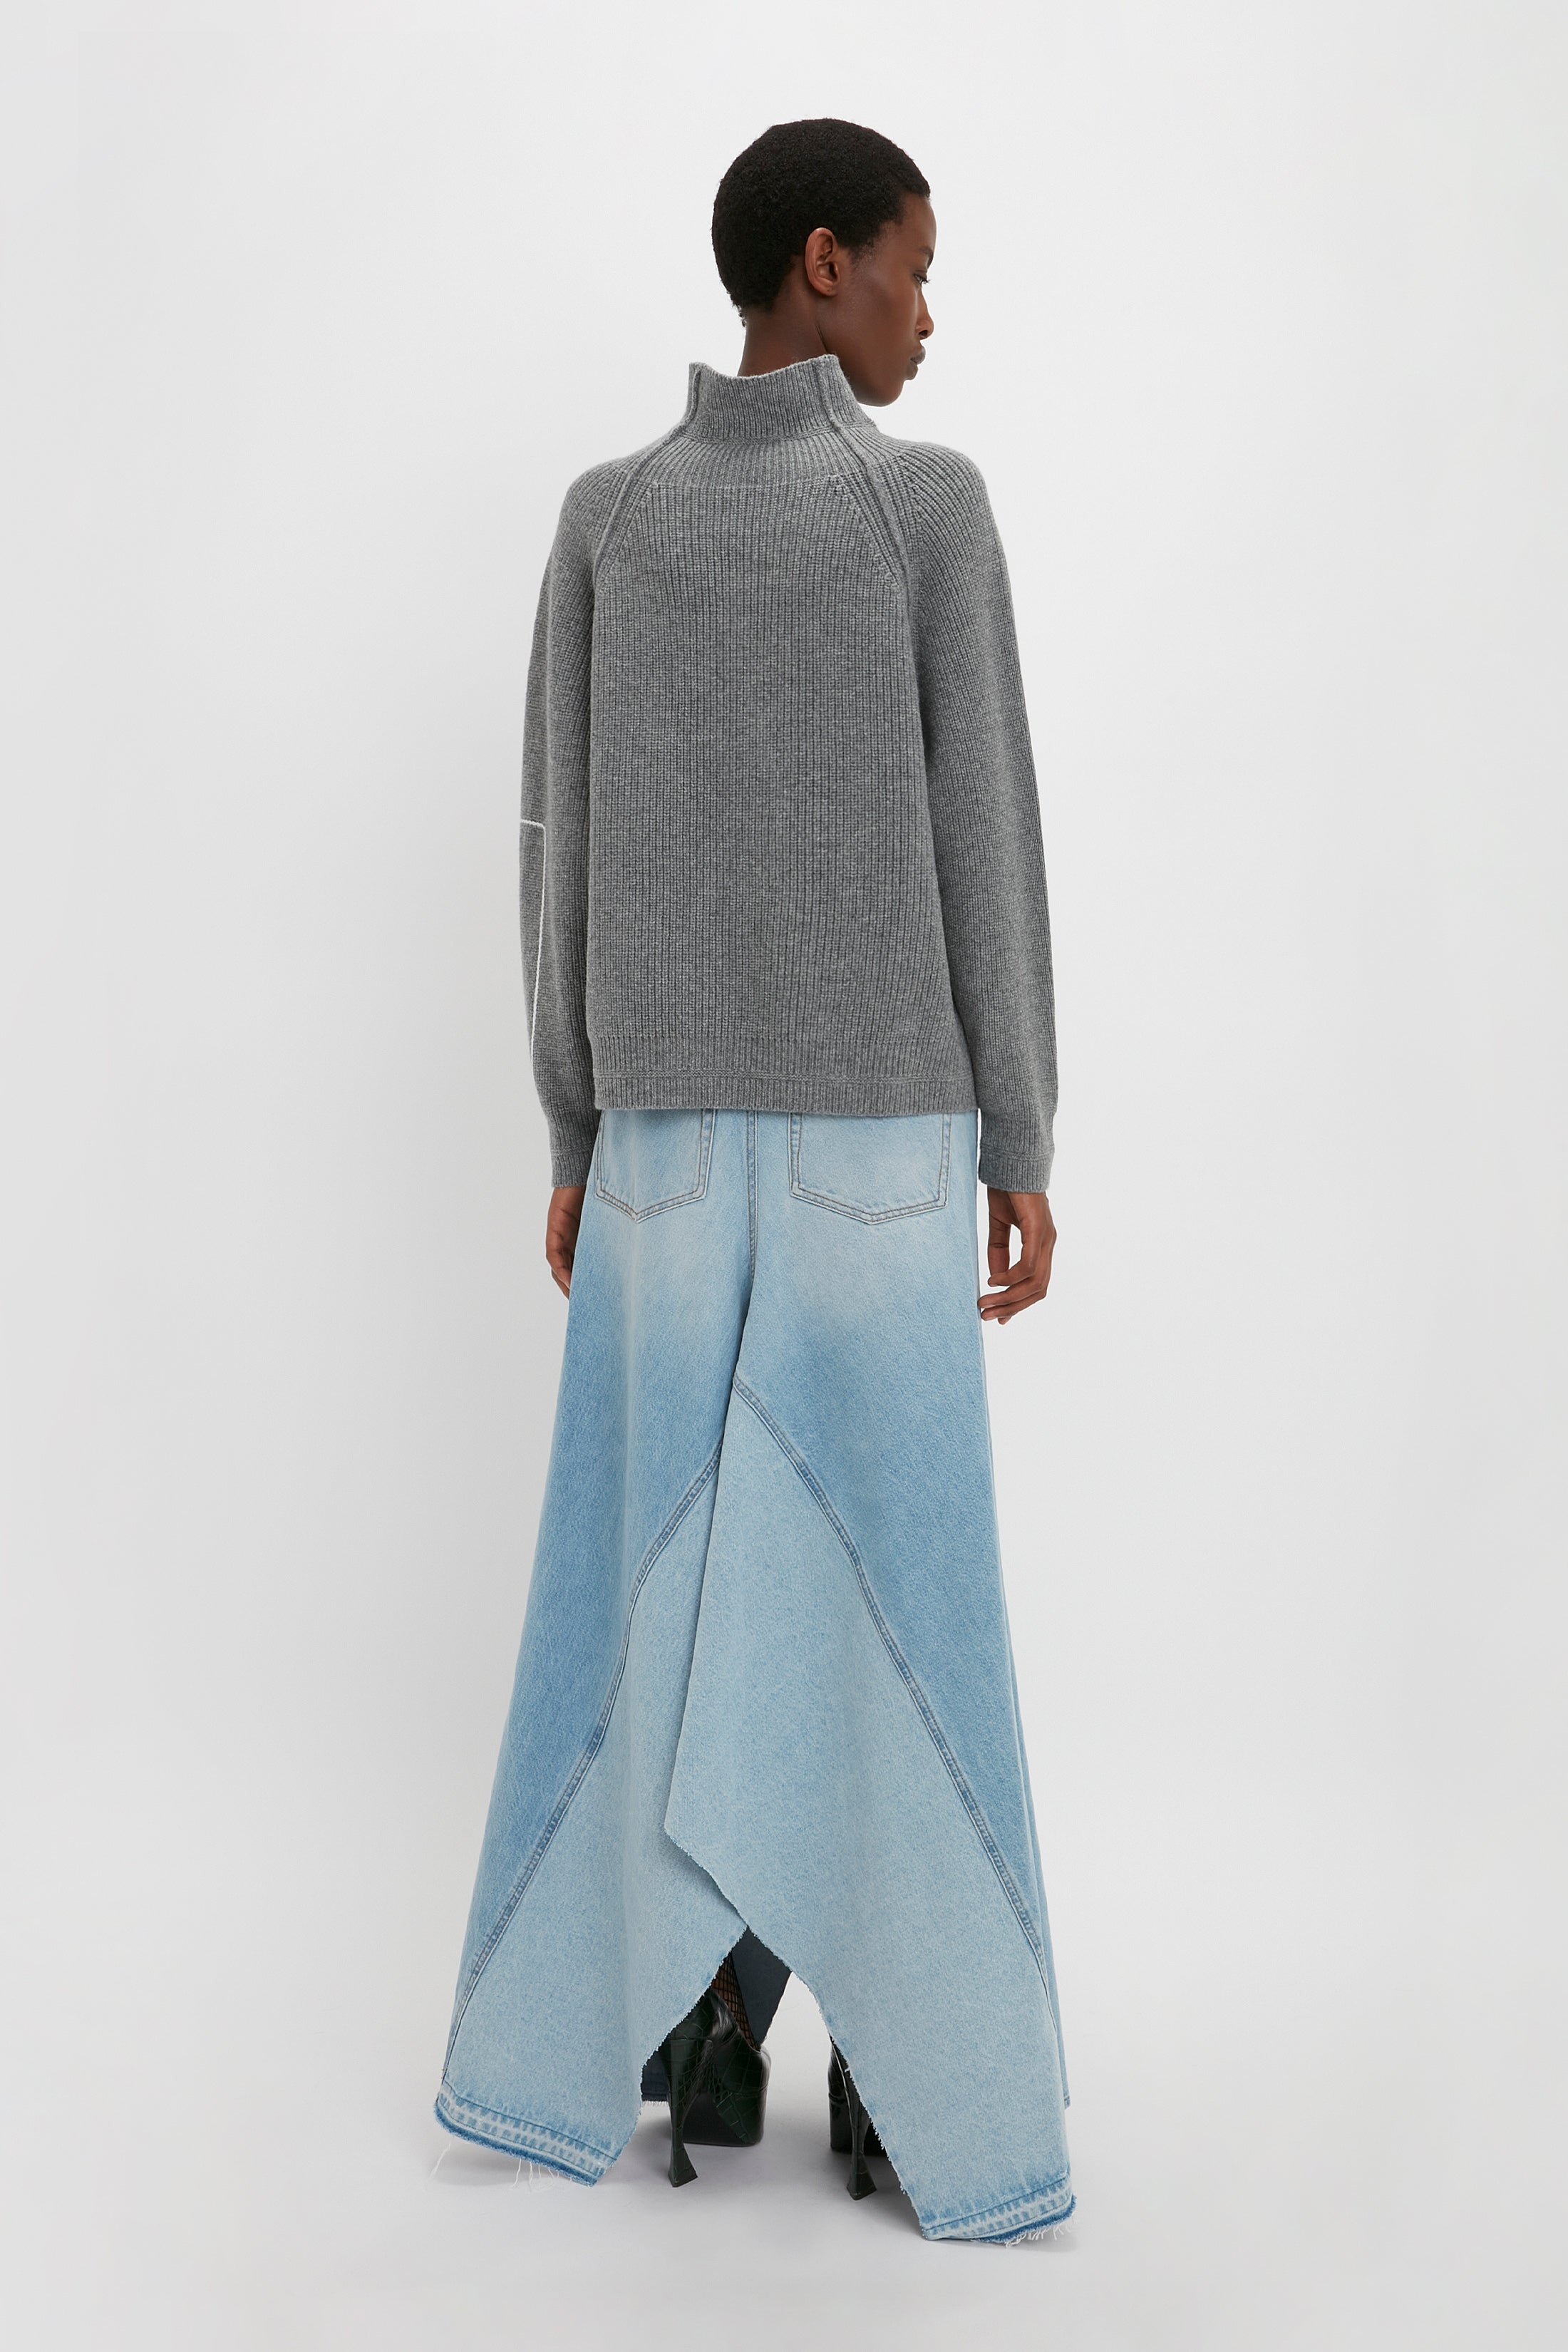 Maxi Godet Denim Skirt In Light Blue Wash - 4